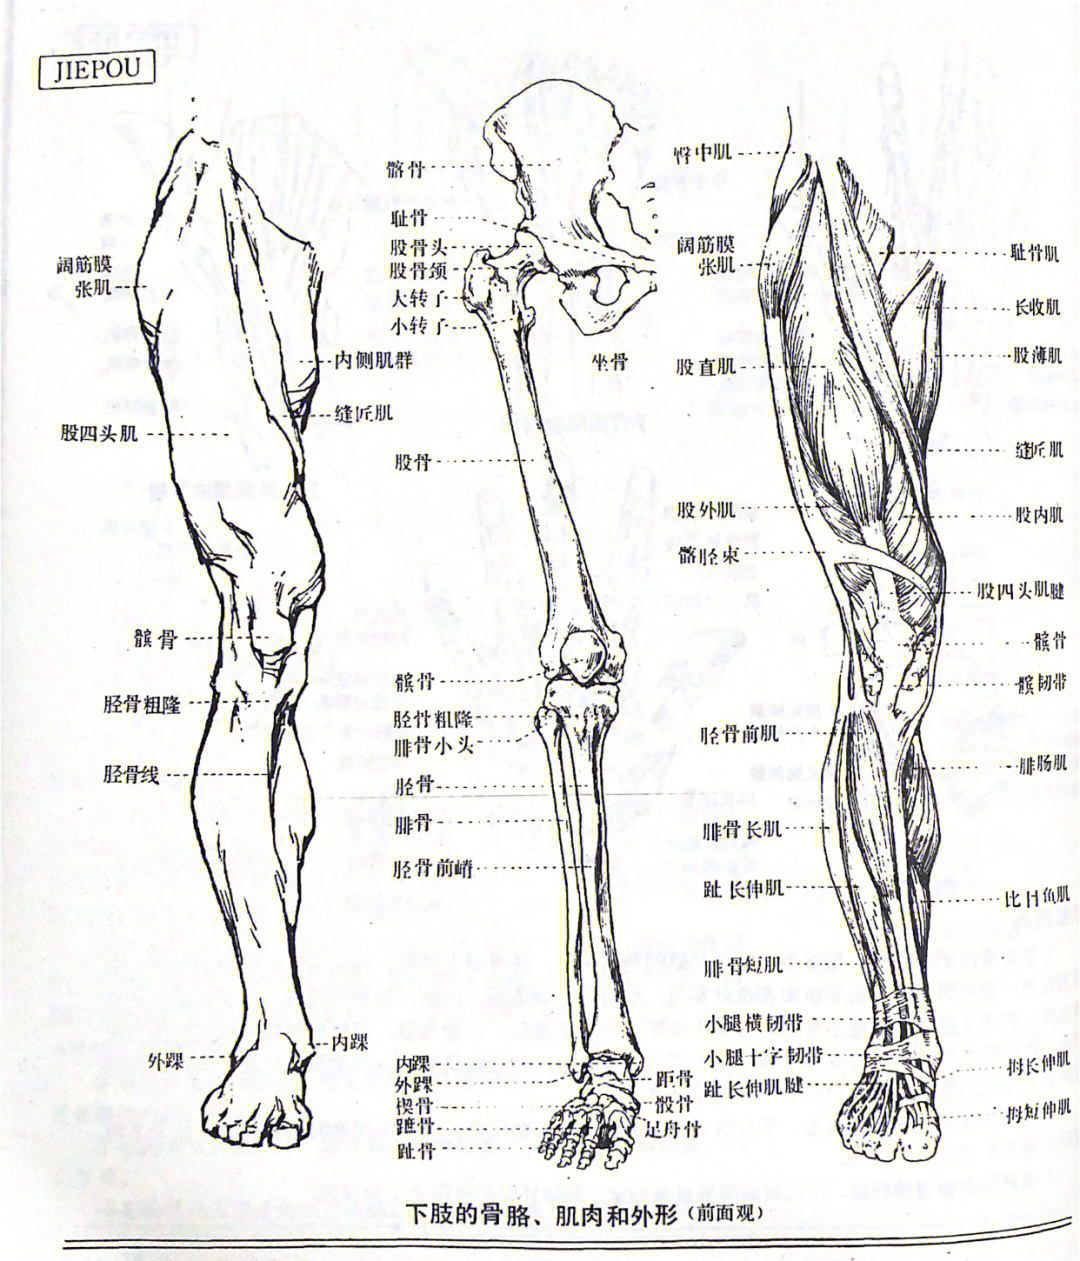 腿部肌肉图解大全高清图片